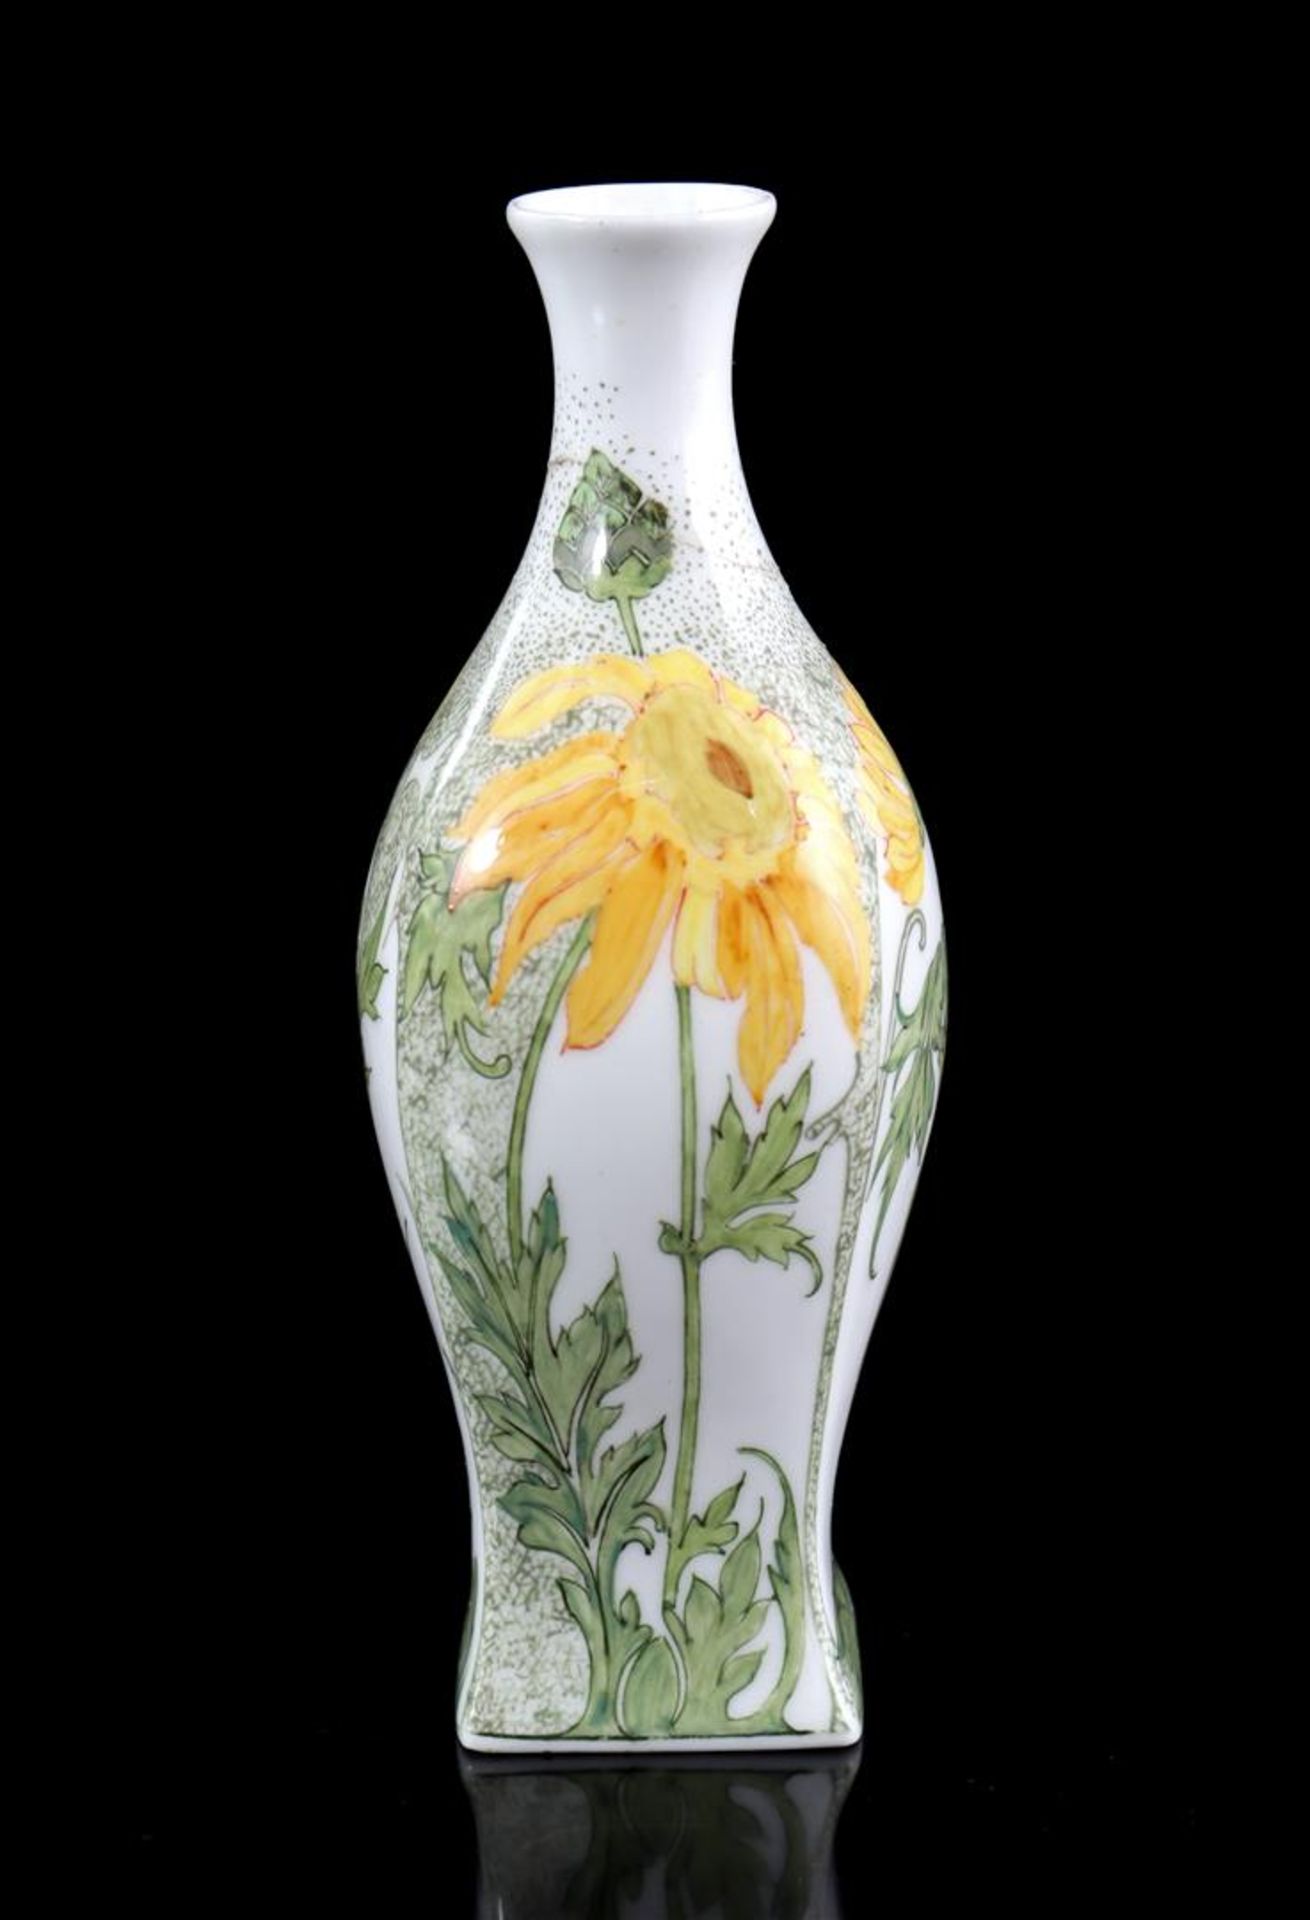 Rozenburg The Hague eggshell porcelain vase with floral decor